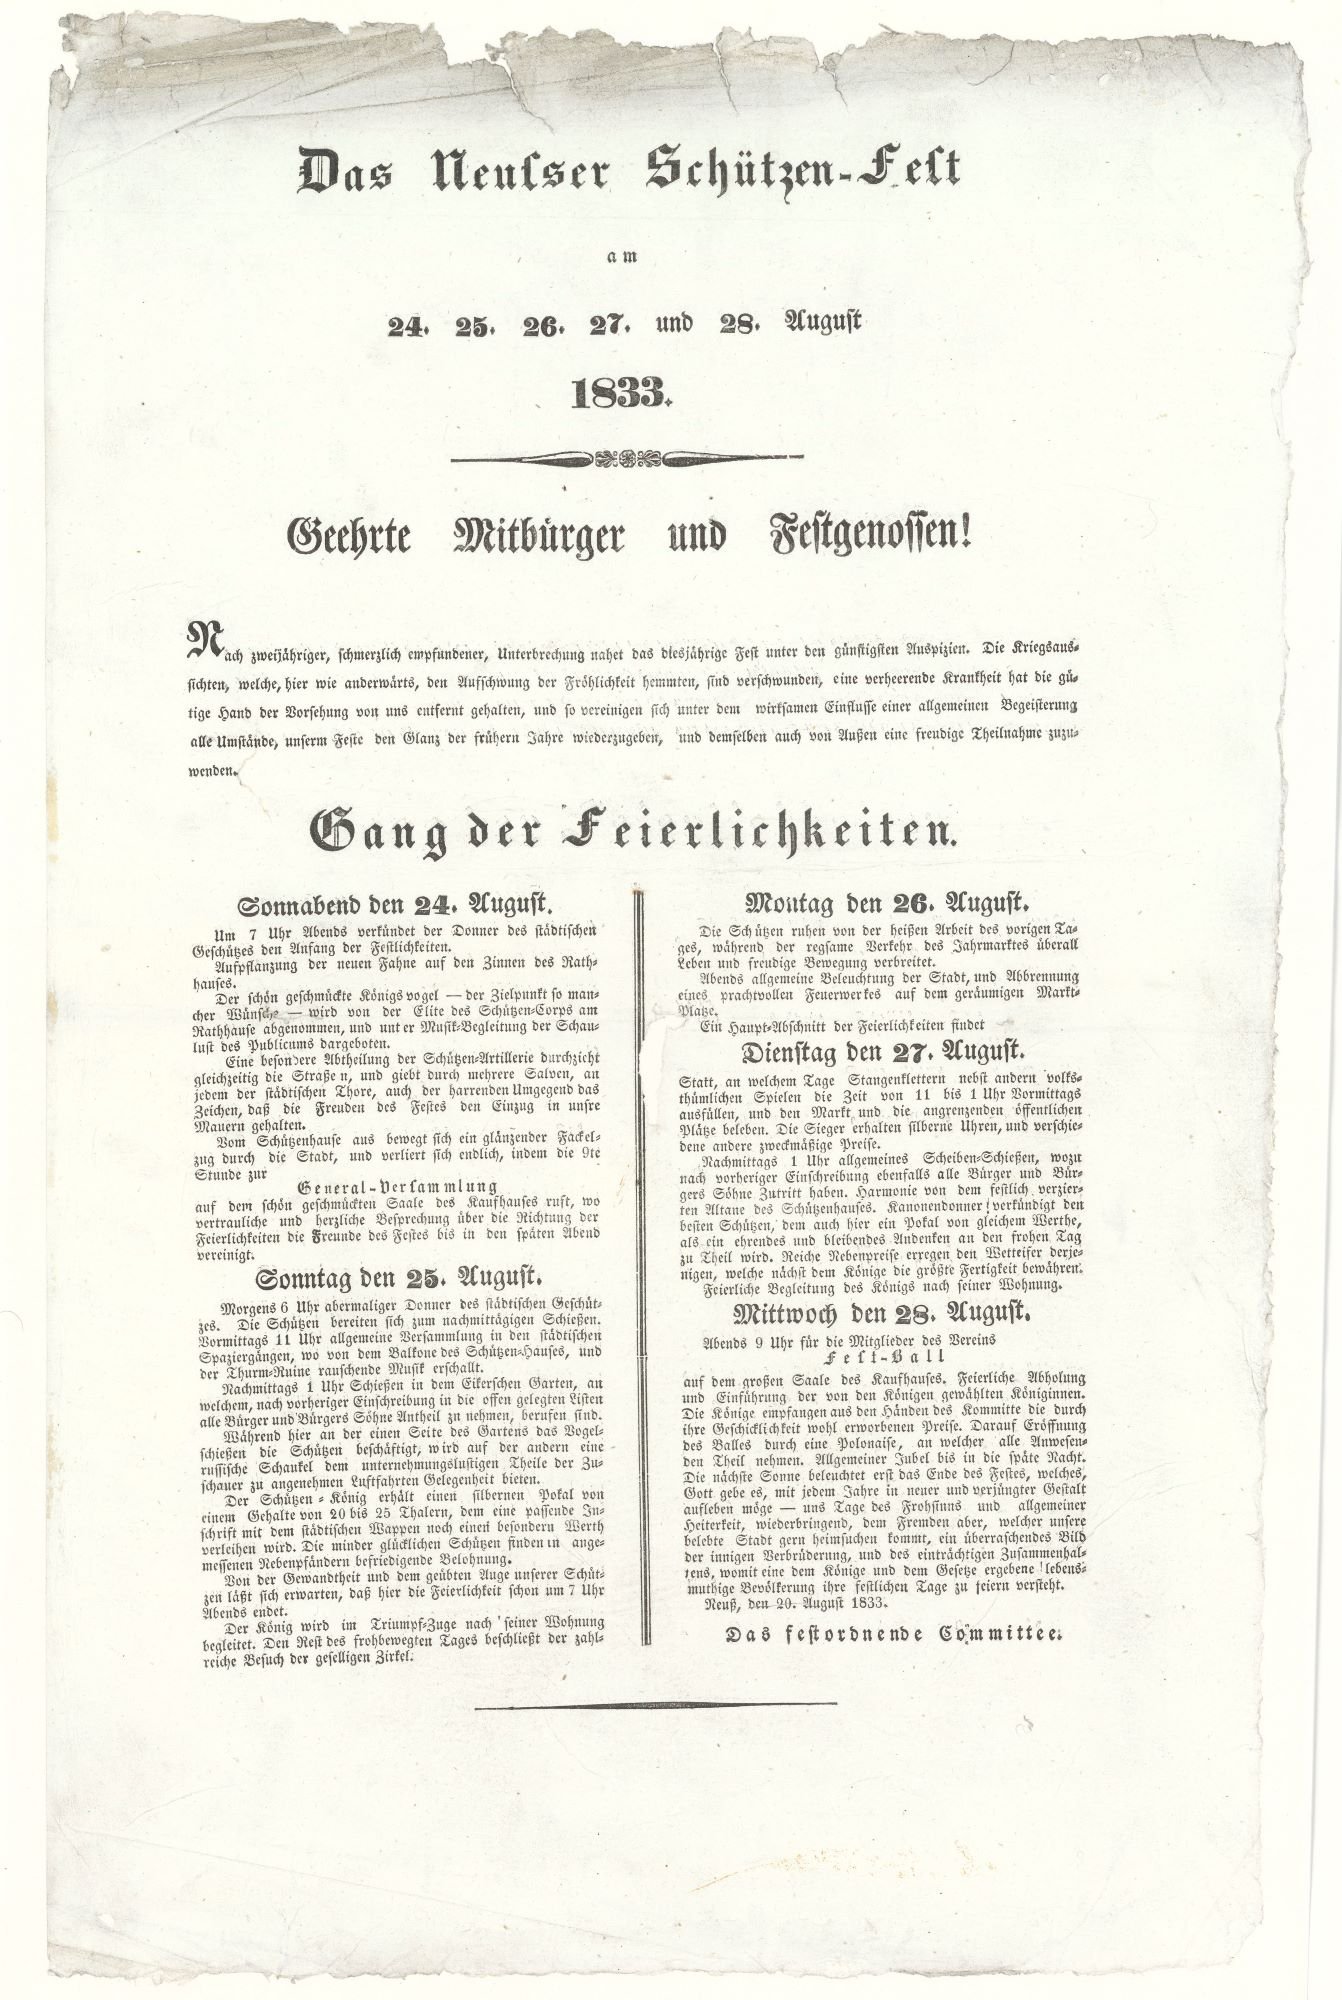 Festplakat Neusser Schützenfest von 1833 (Rheinisches Schützenmuseum Neuss CC BY-NC-SA)